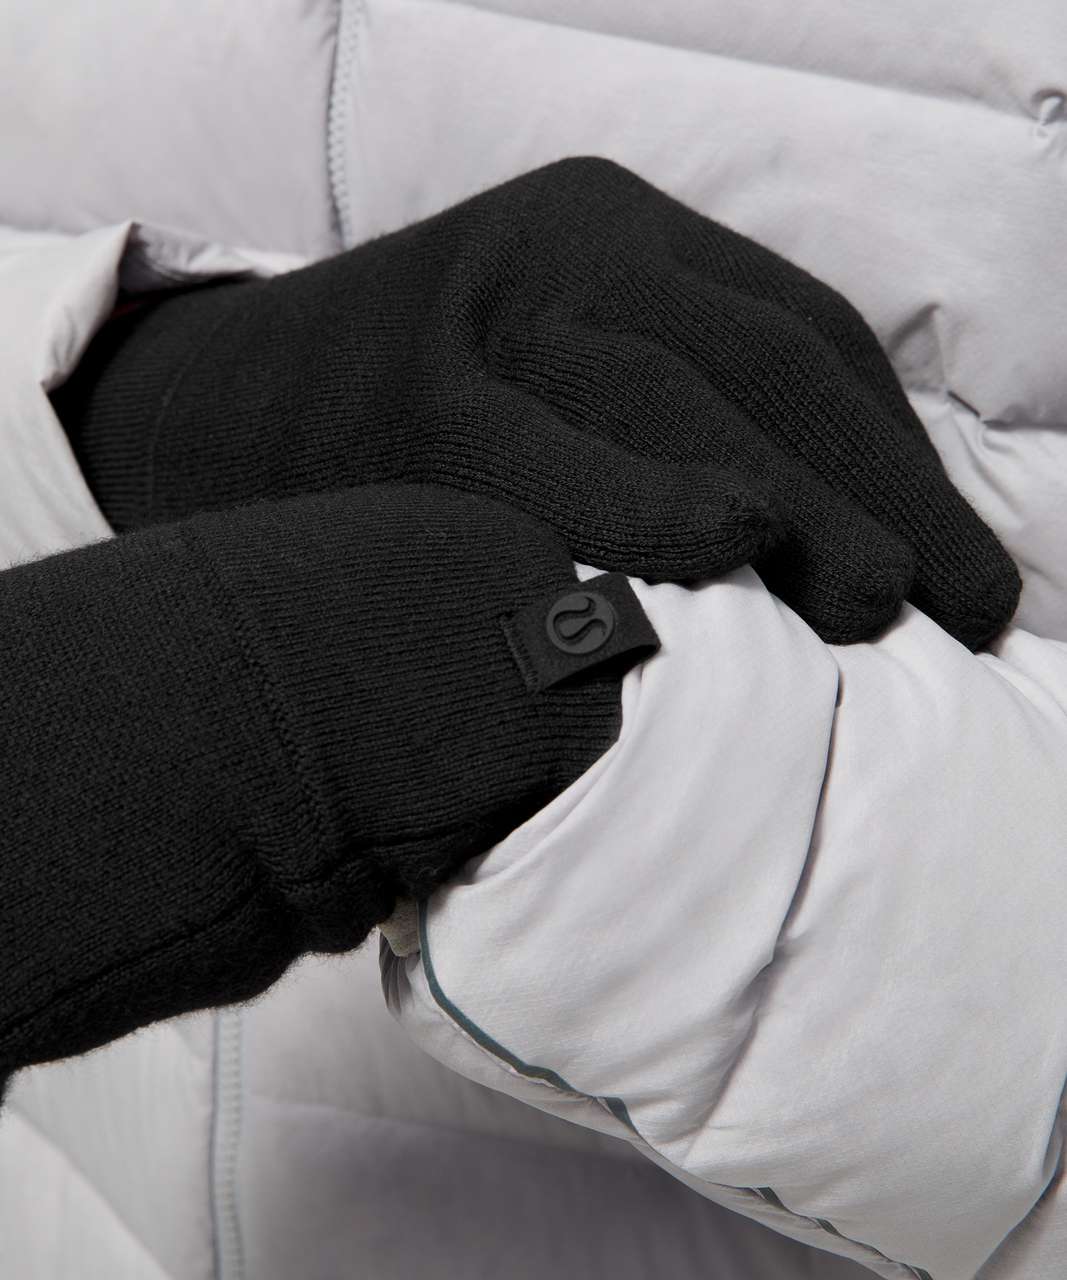 Lululemon Alpine Air Glove - Black / Graphite Grey